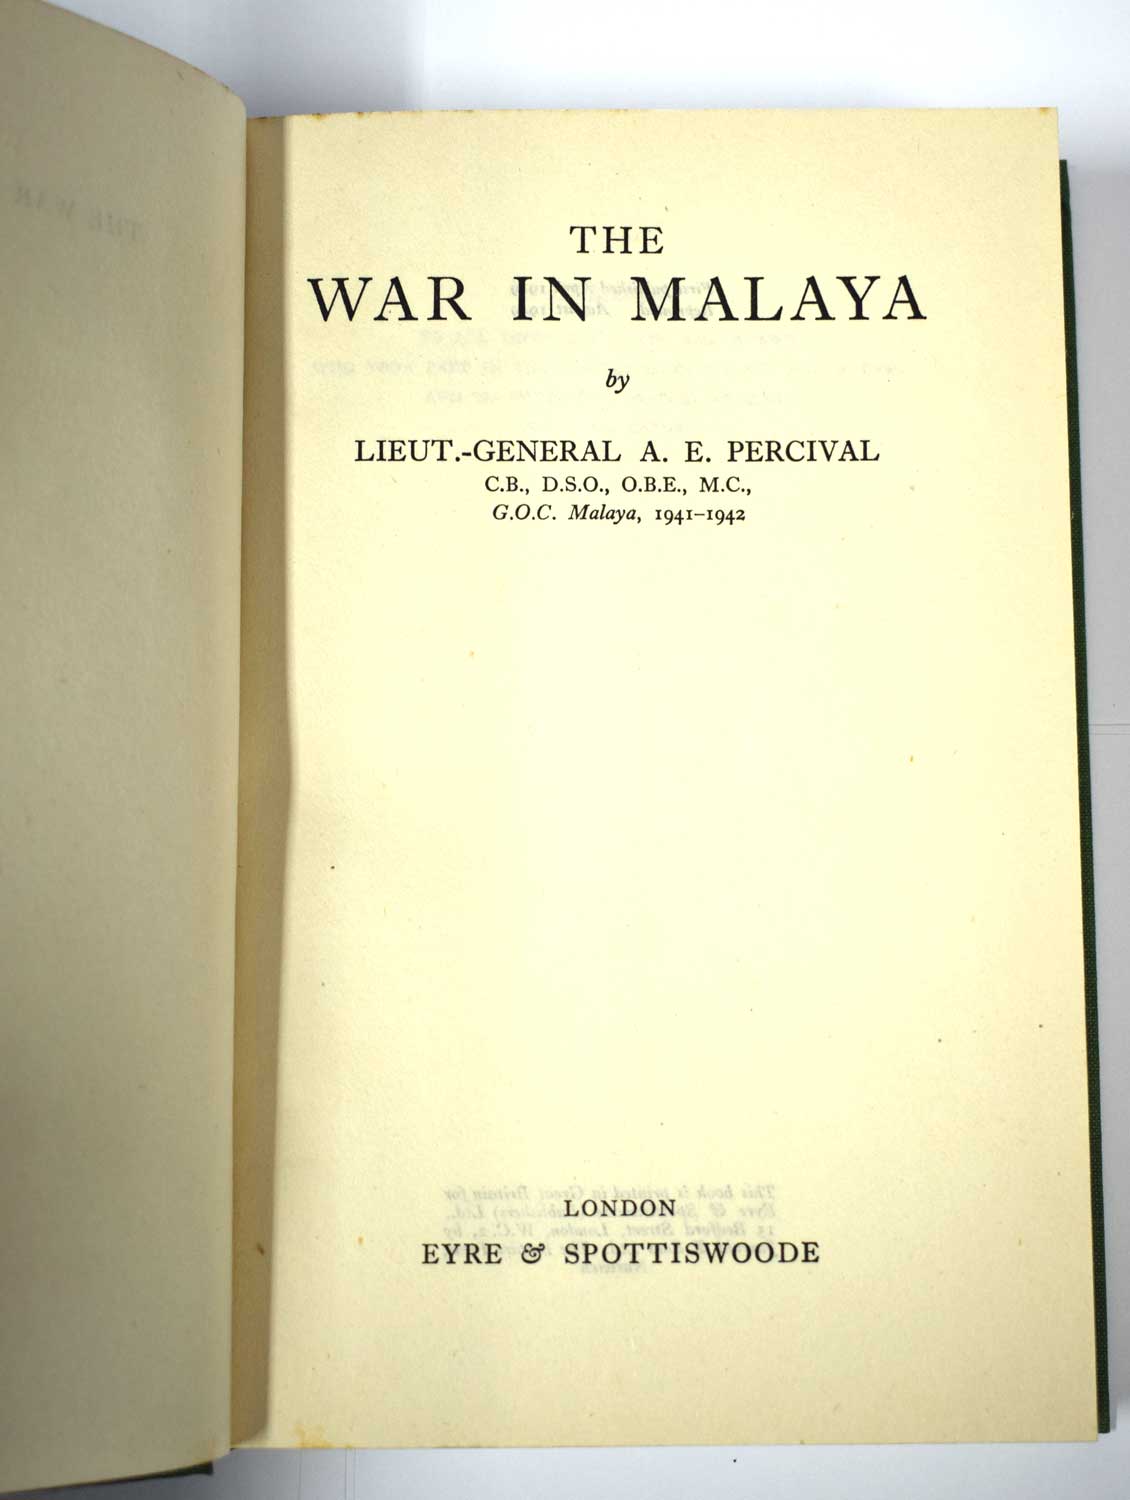 The War in Malaya